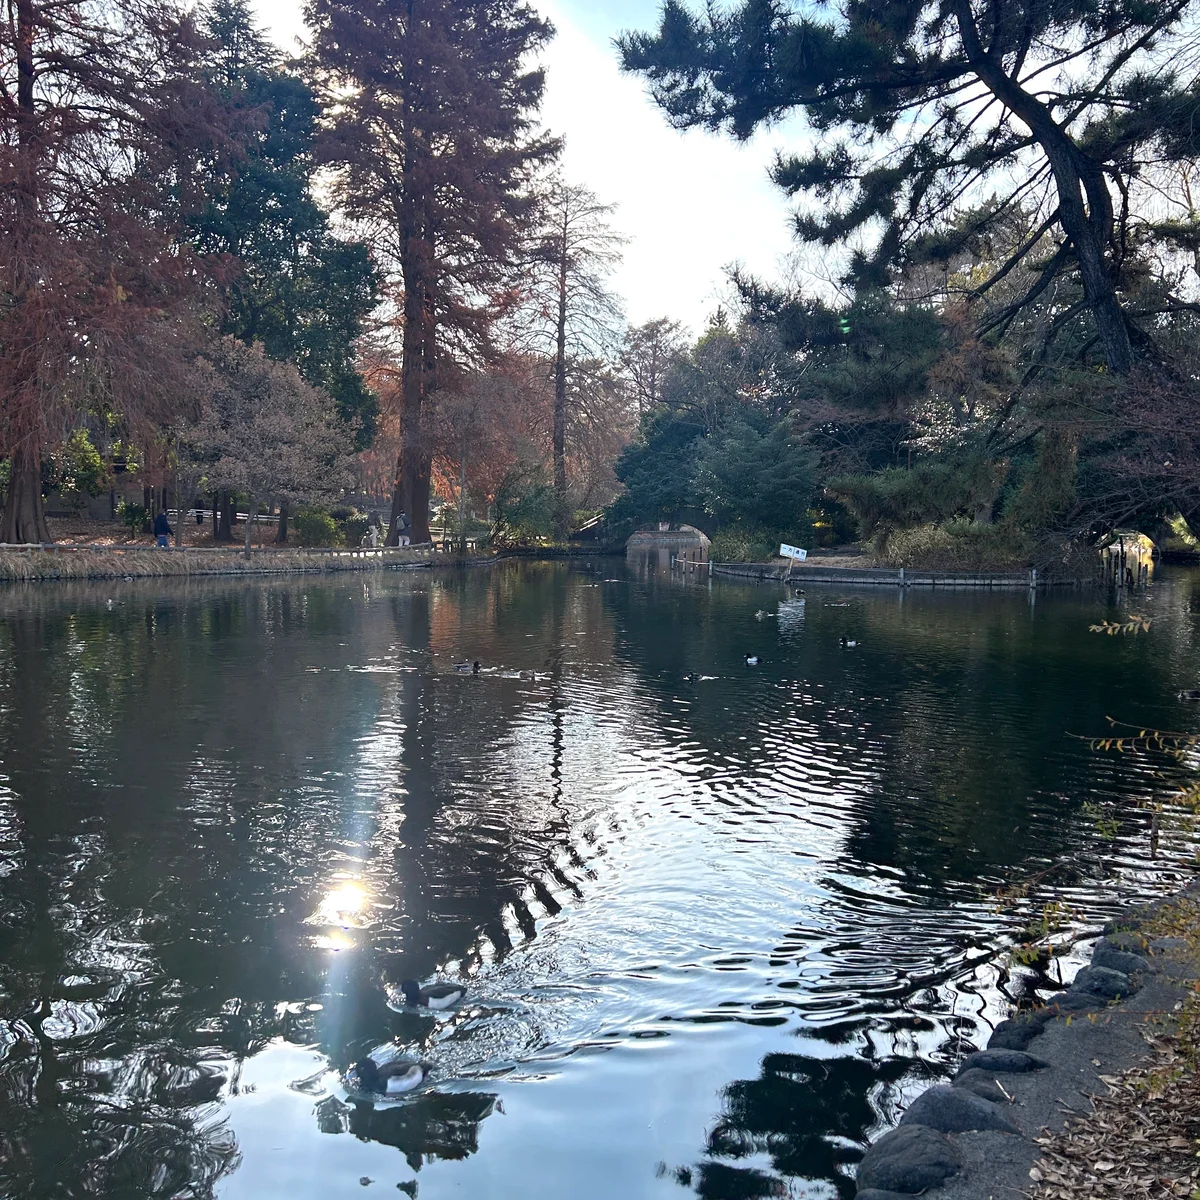 石神井公園